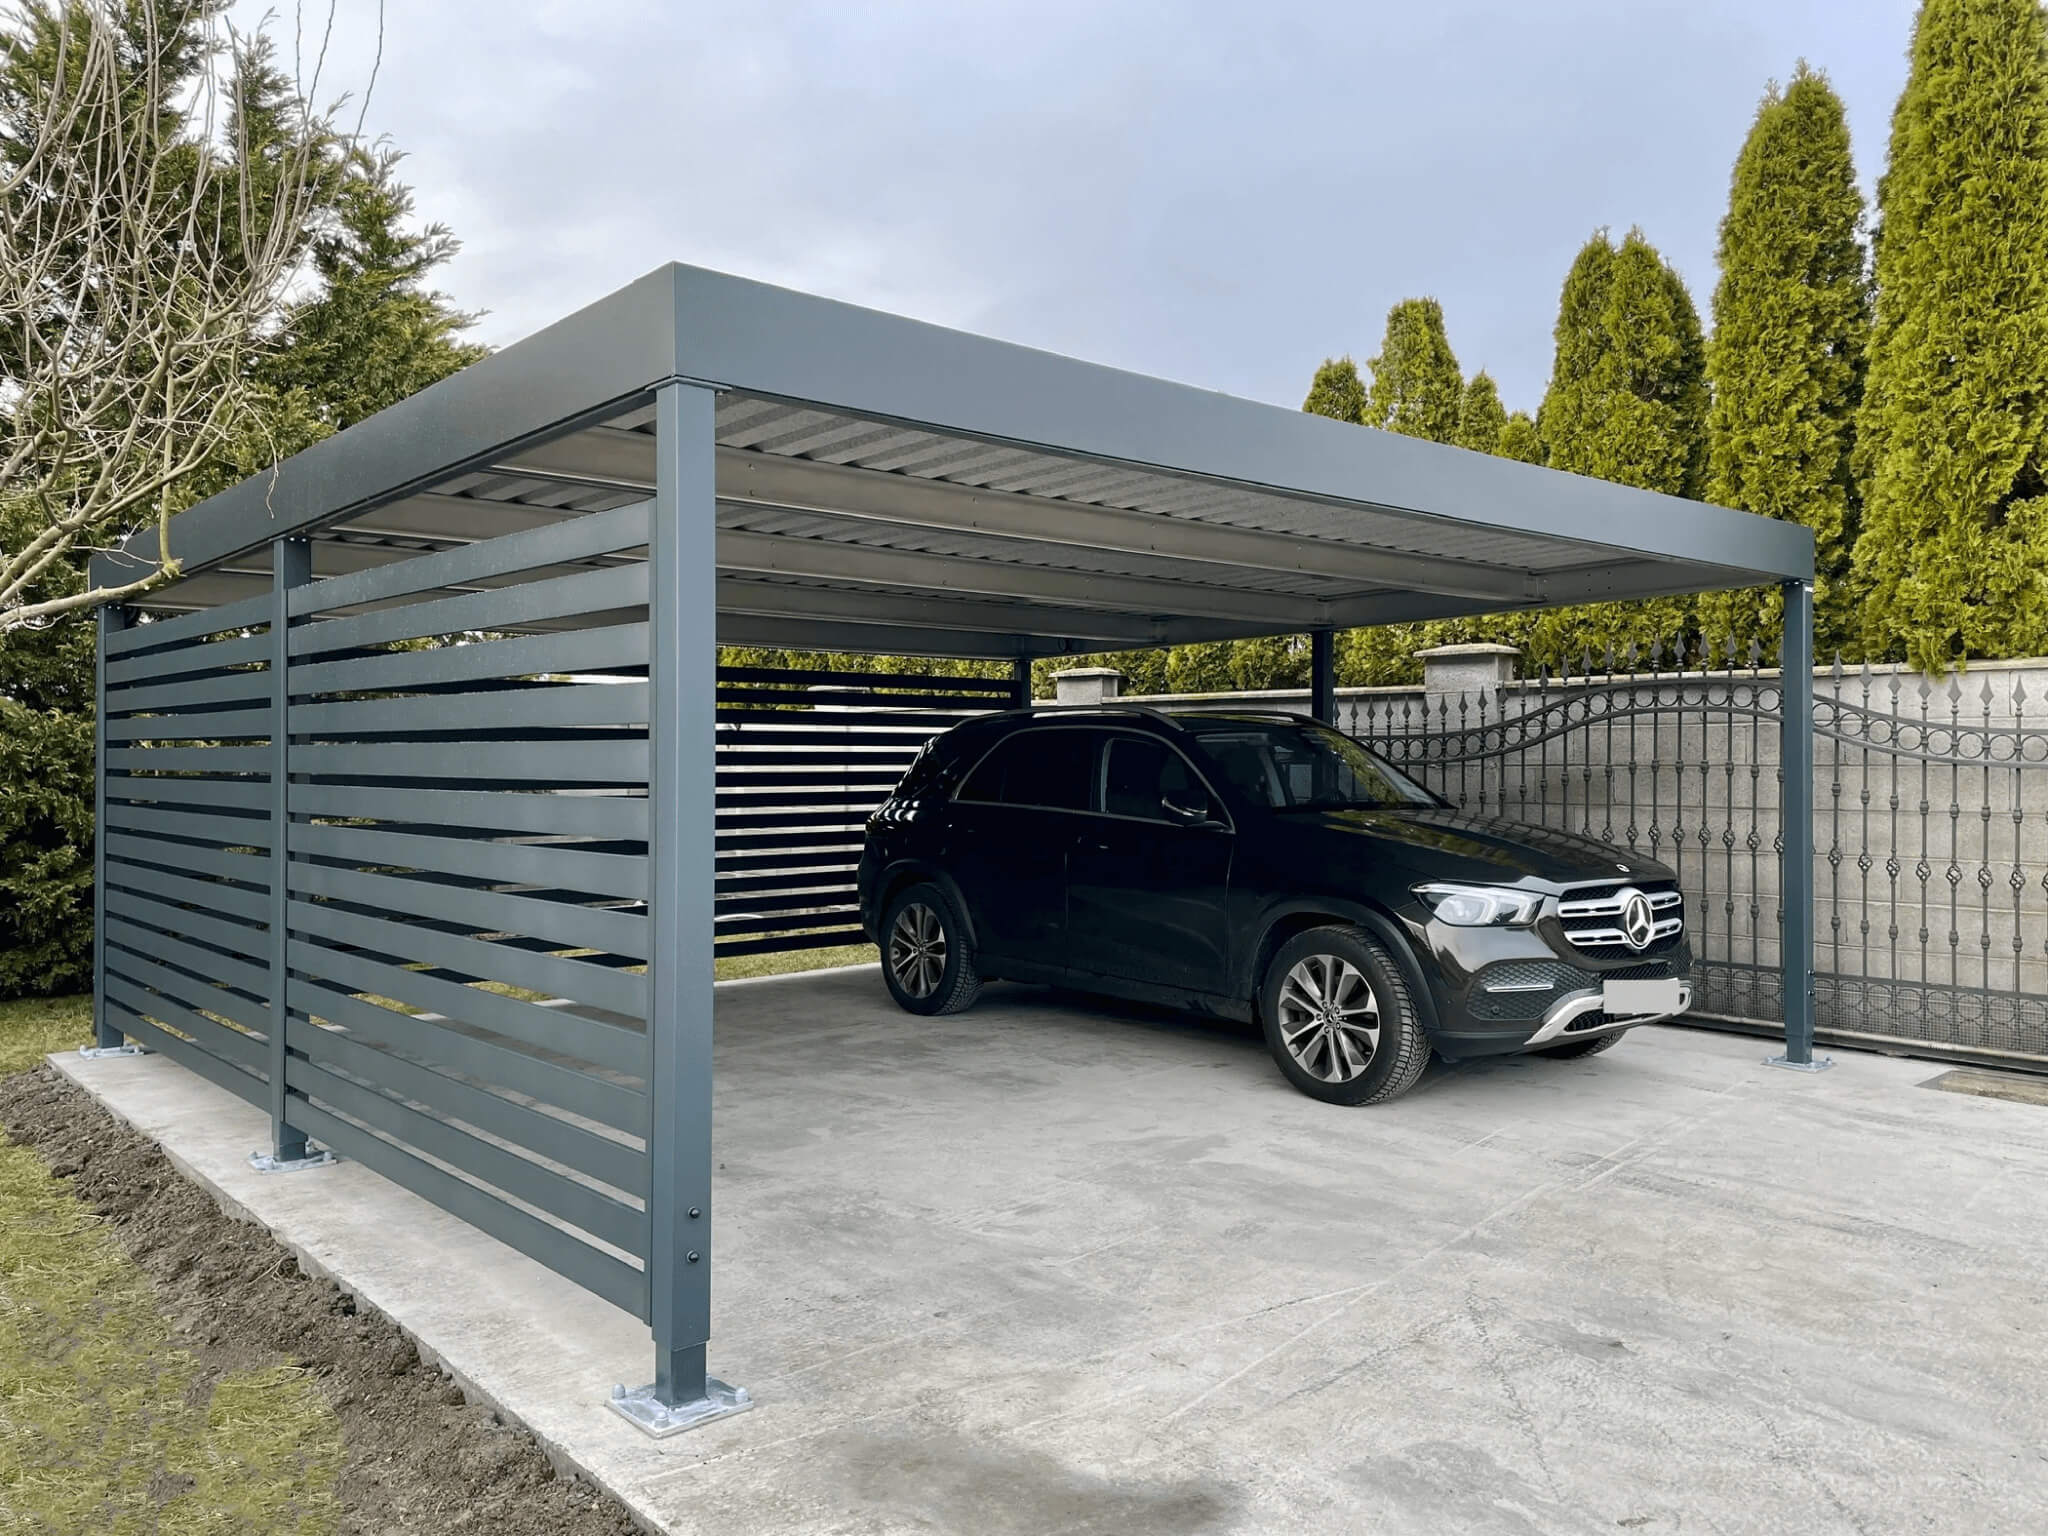 Moderný oceľový prístrešok pre auto so strechou trapézového profilu poskytujúci efektívnu ochranu pred počasím, cenovo dostupný od Koverta